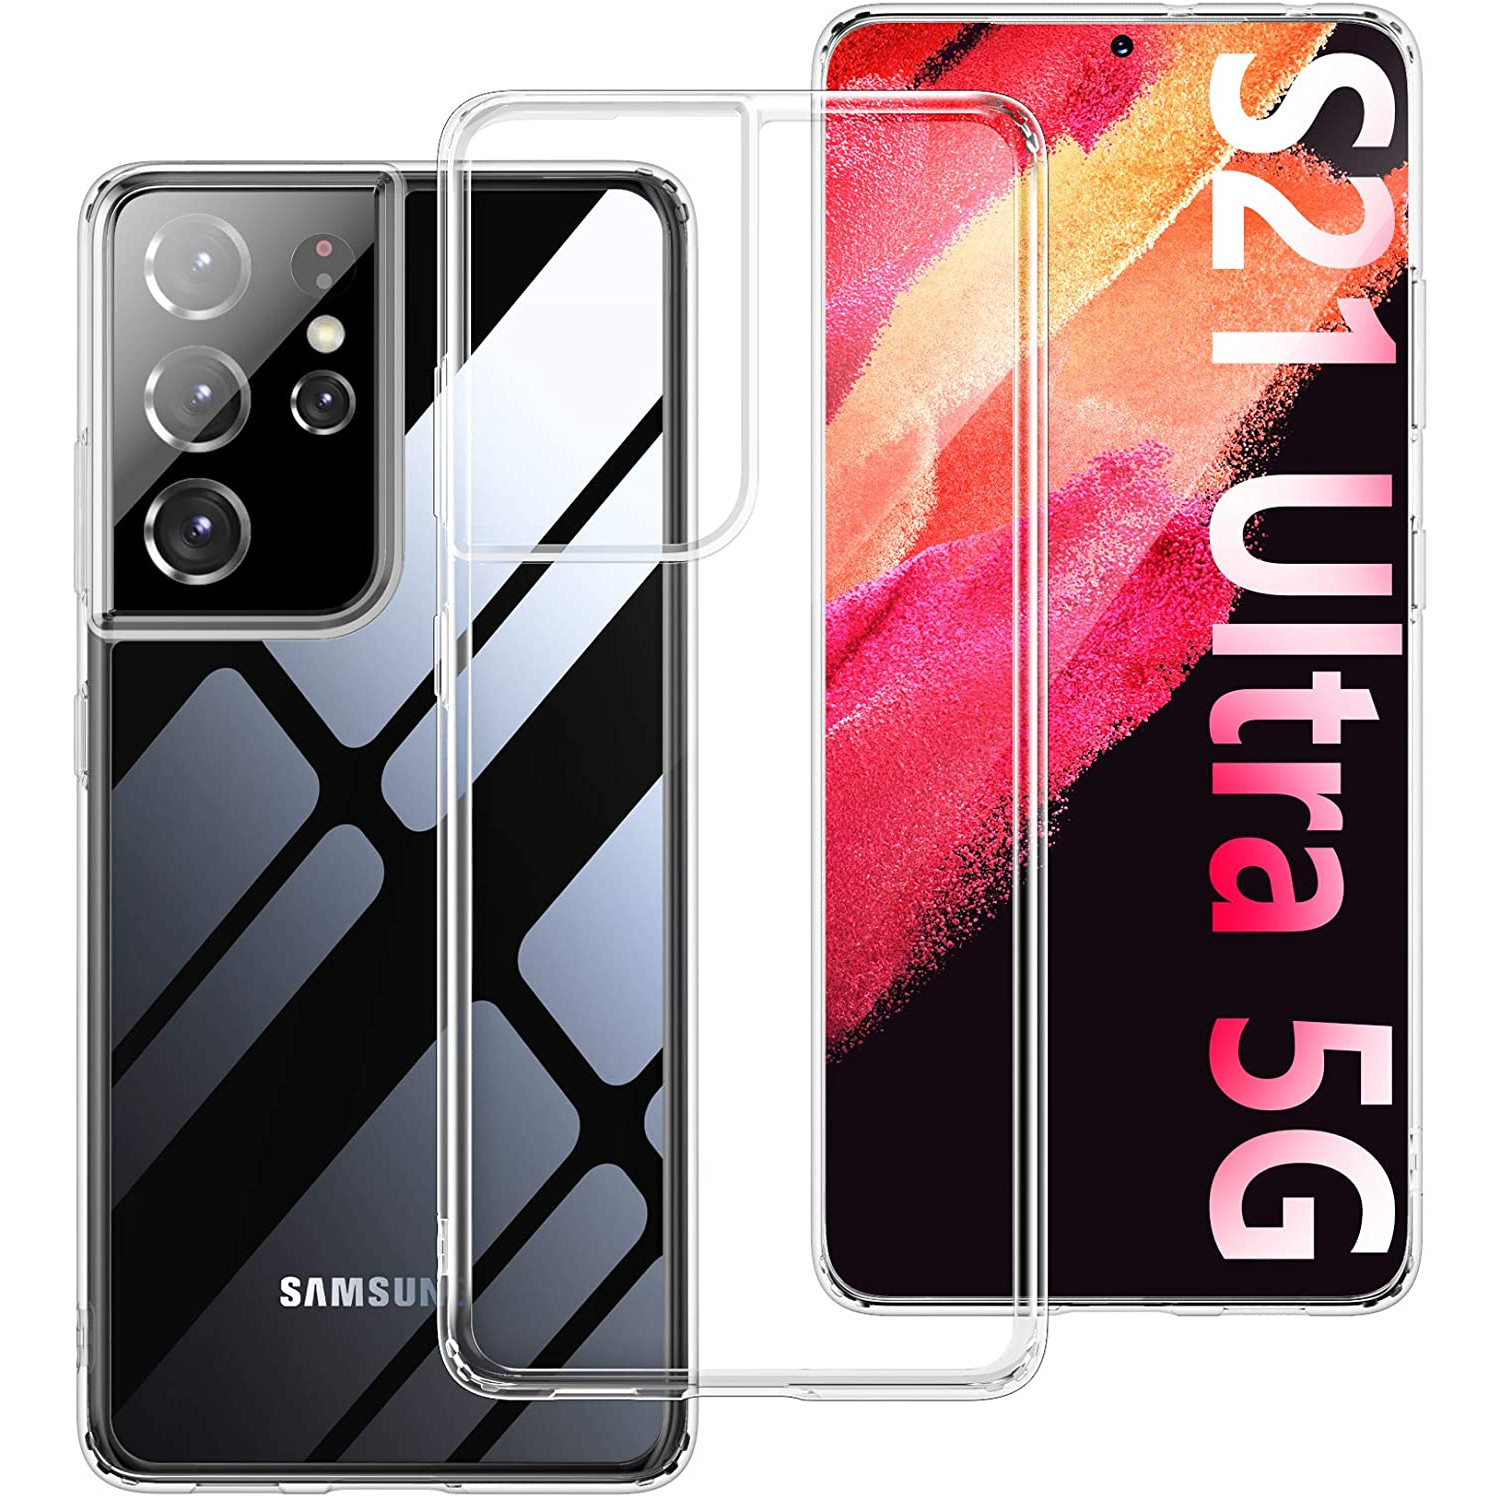 Ốp lưng chống sốc trong suốt siêu mỏng cho Samsung Galaxy S21 Ultra hiệu Likgus Crashproof giúp chống chịu mọi va đập - hàng nhập khẩu